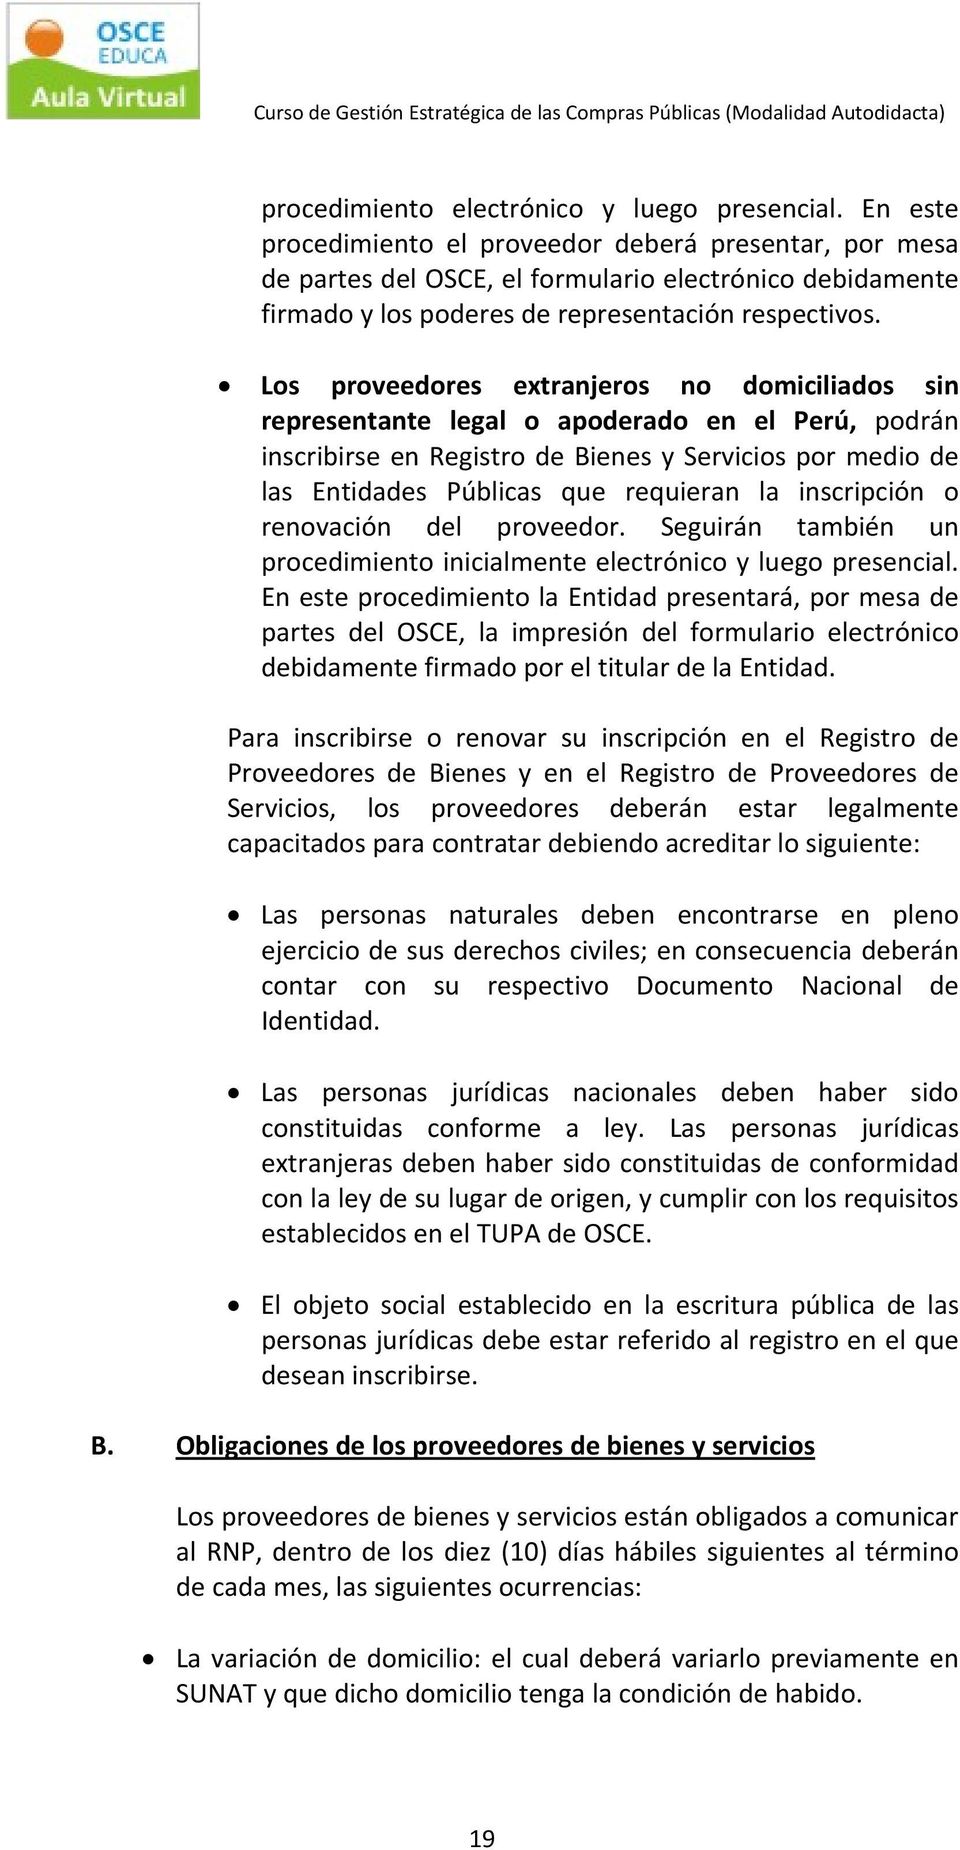 Los proveedores extranjeros no domiciliados sin representante legal o apoderado en el Perú, podrán inscribirse en Registro de Bienes y Servicios por medio de las Entidades Públicas que requieran la